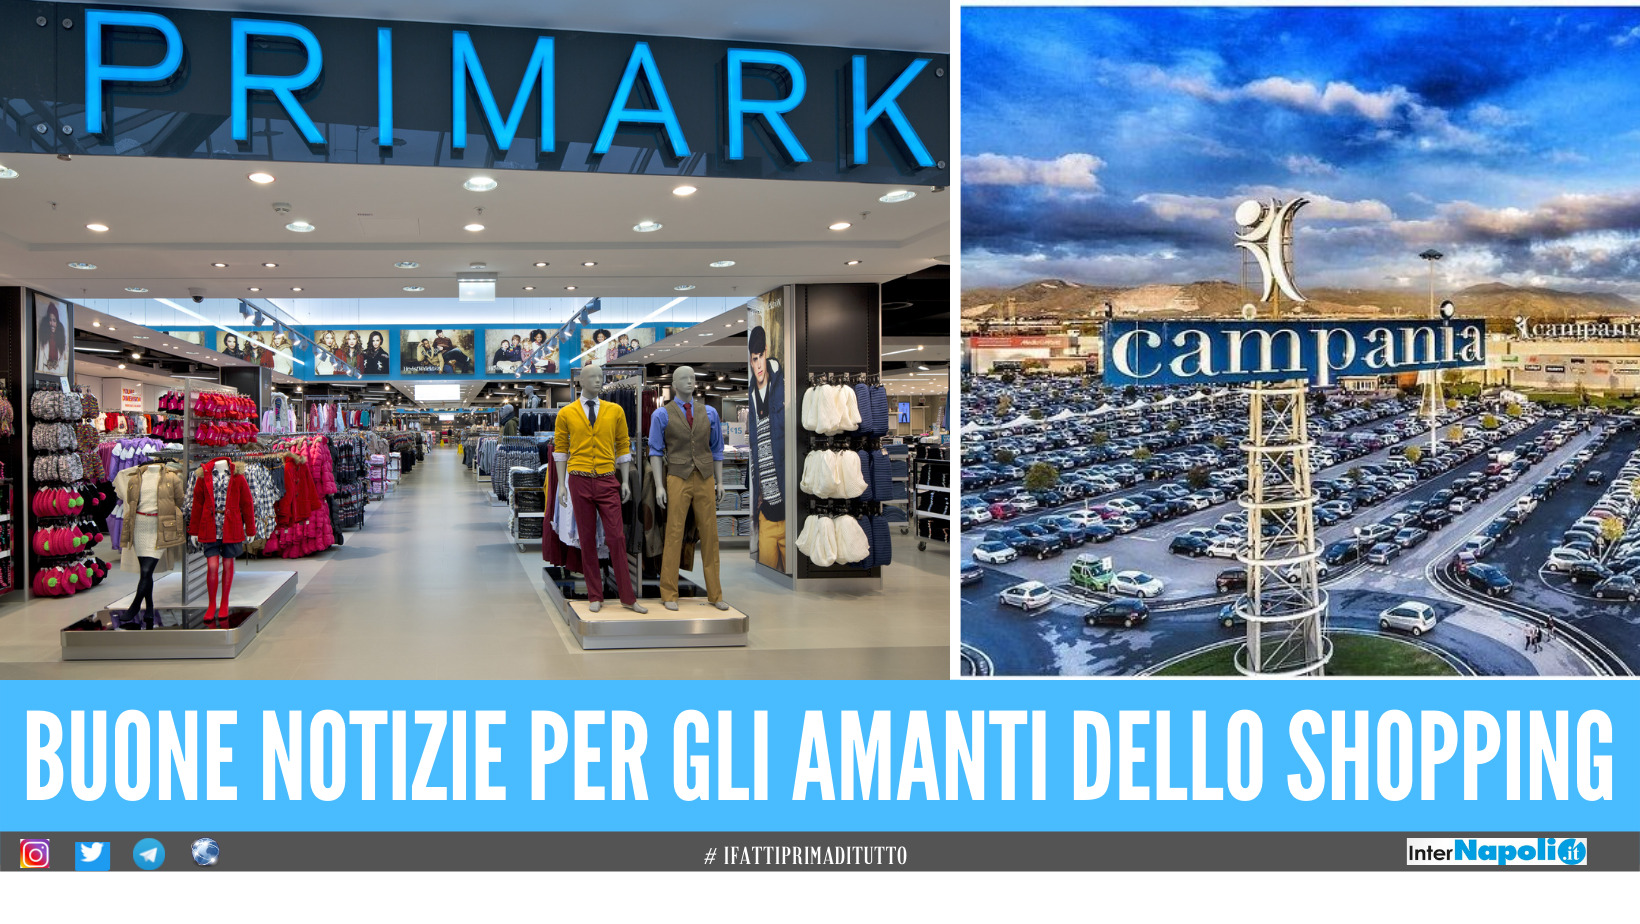 Primark, Centro Commerciale Campania